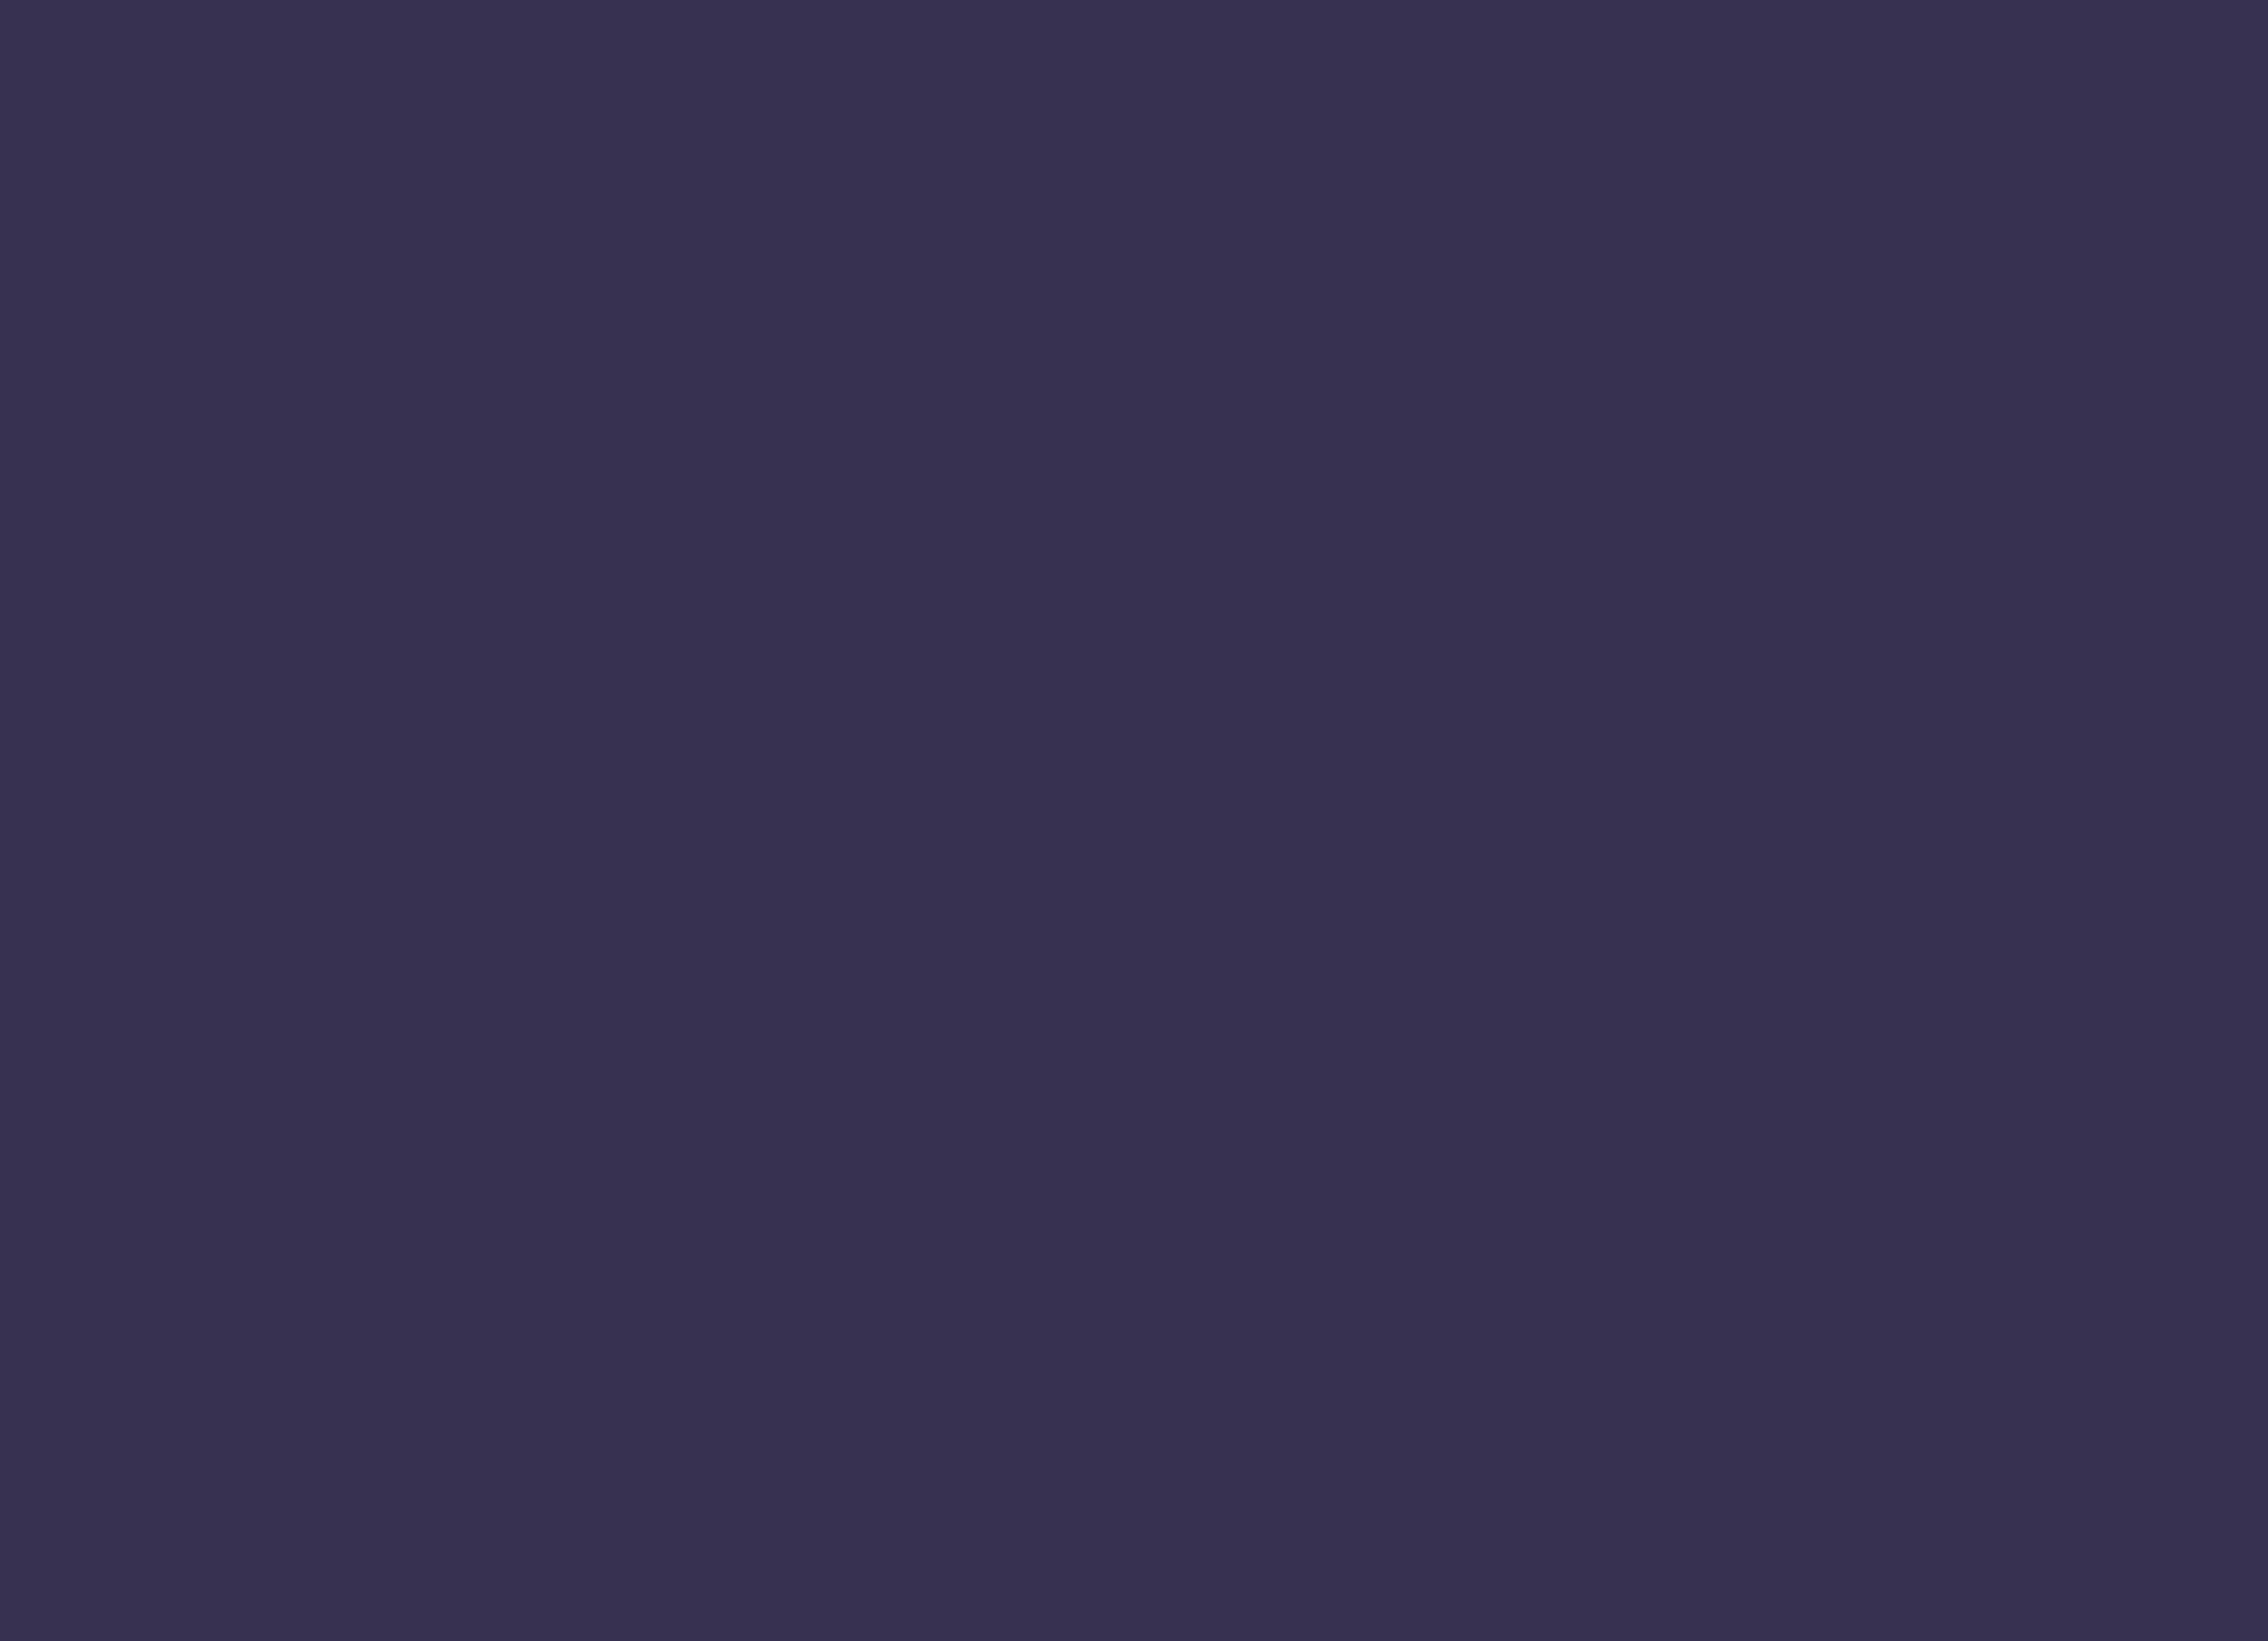 Background purple colour